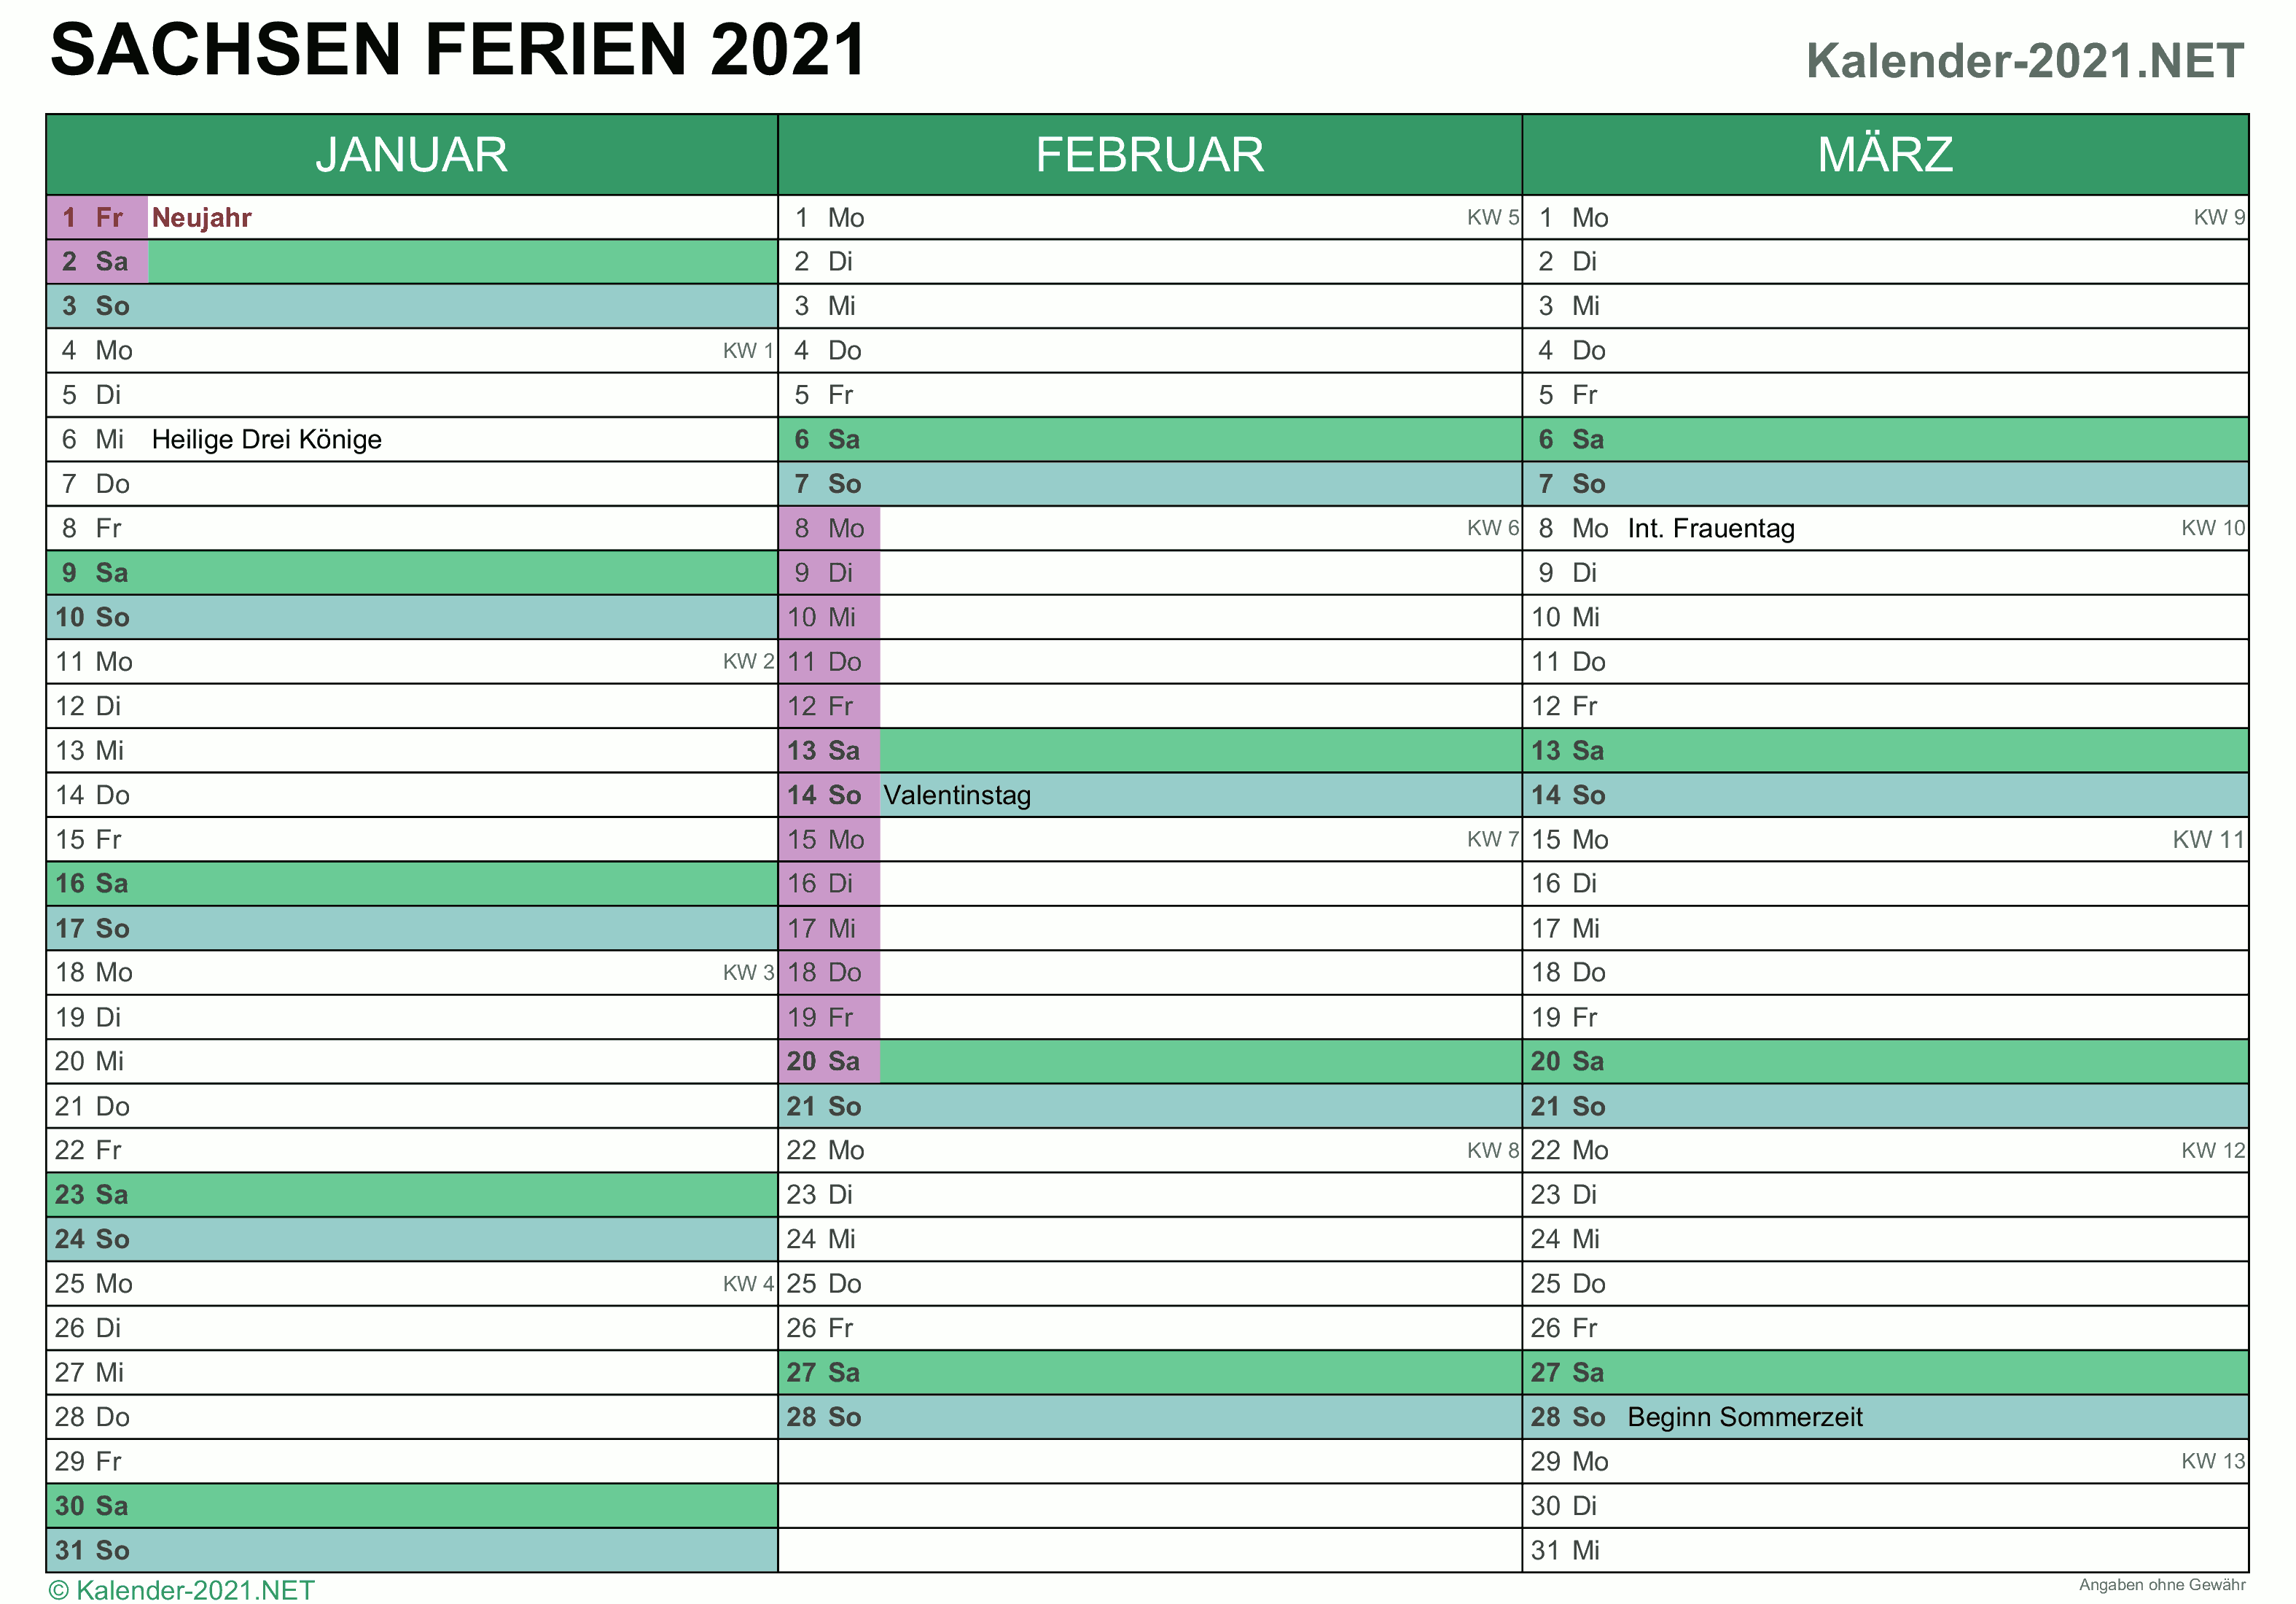 FERIEN Sachsen 2021 - Ferienkalender & Übersicht